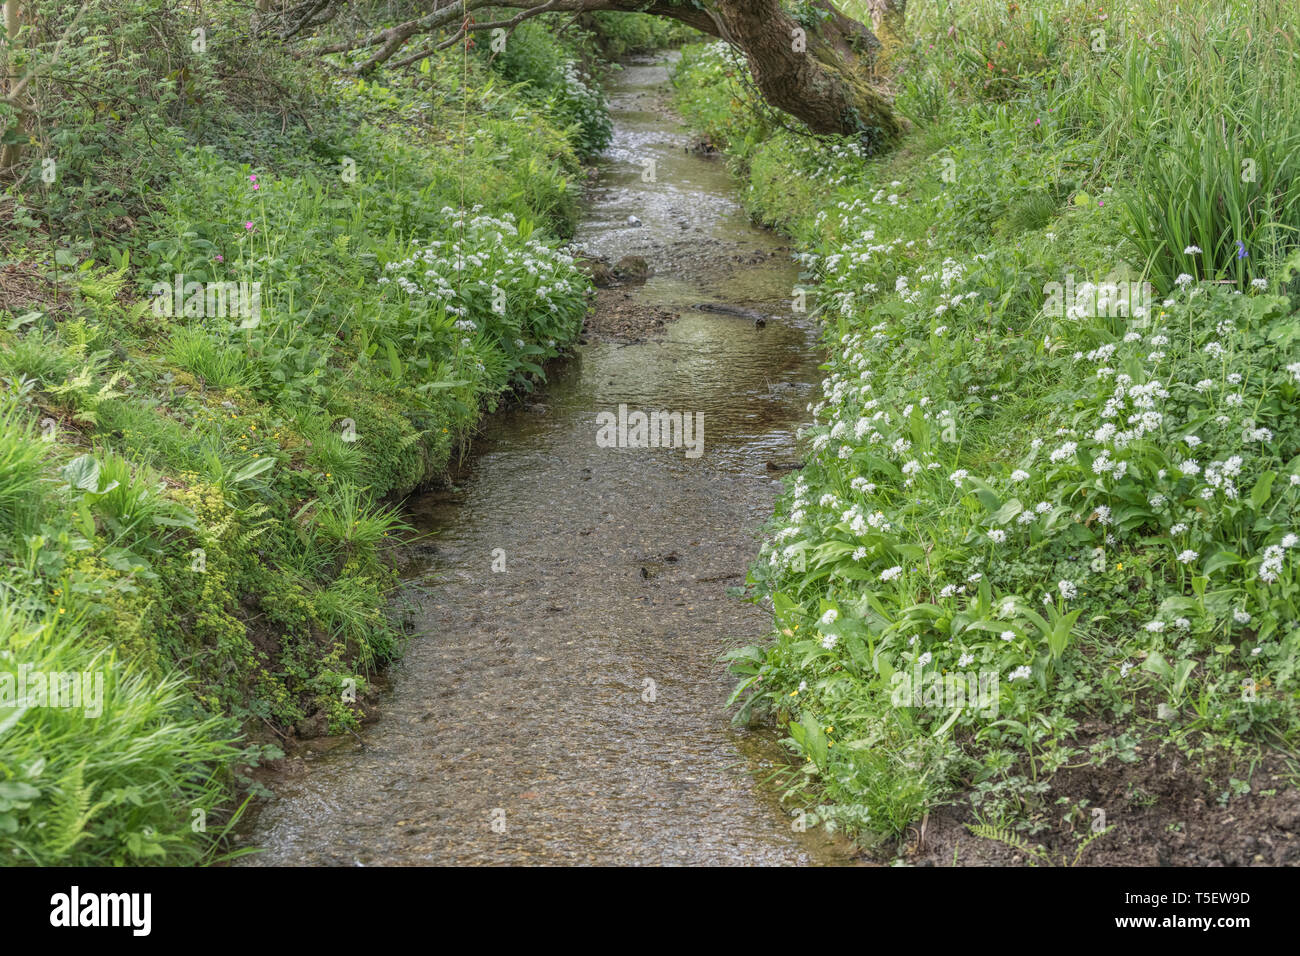 La masse de l'ail des ours Allium ursinum / Ramsons vu croissant sur les rives d'un petit cours d'eau au printemps. Ramsons est comestible. Concept fleur de printemps. Banque D'Images